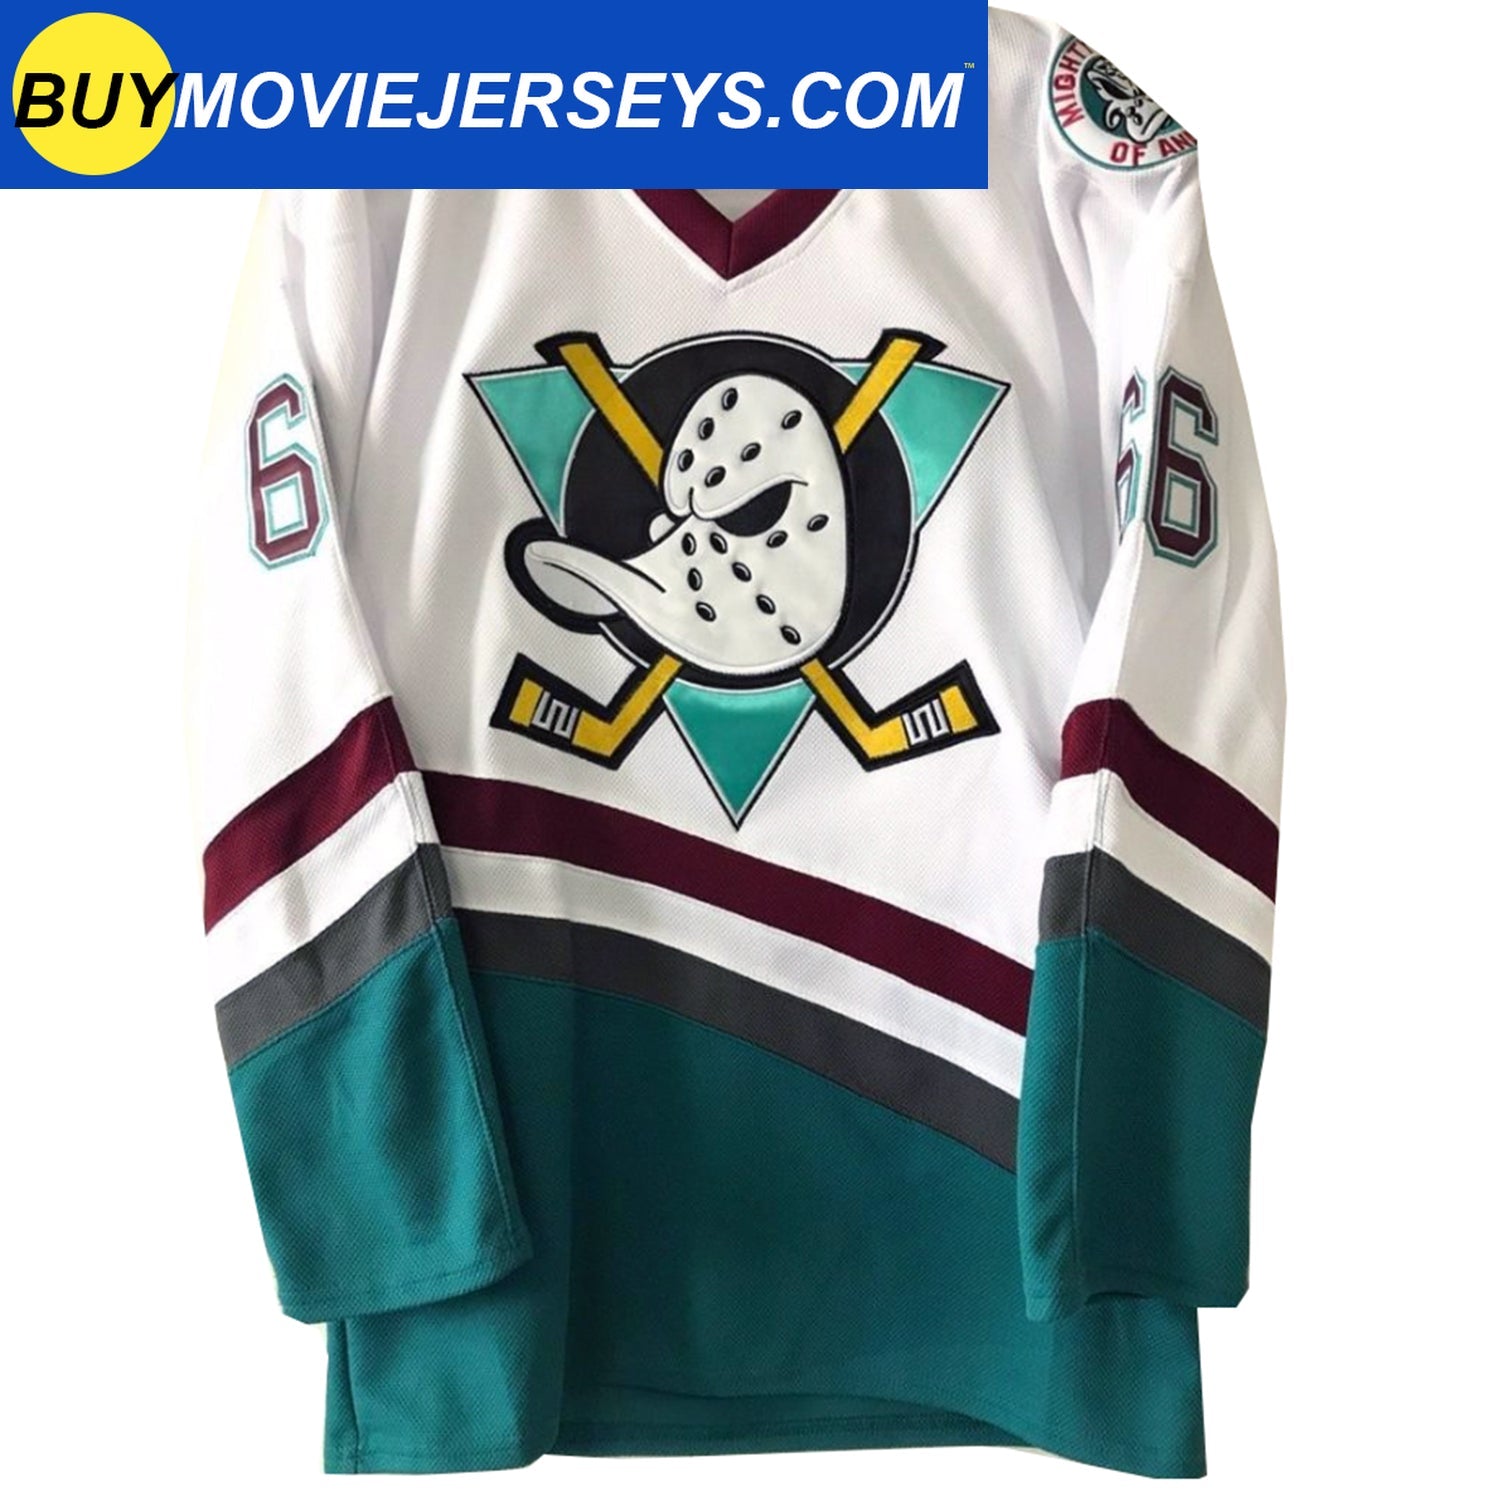 Gordon Bombay #66 Mighty Ducks Movie Hockey Jersey